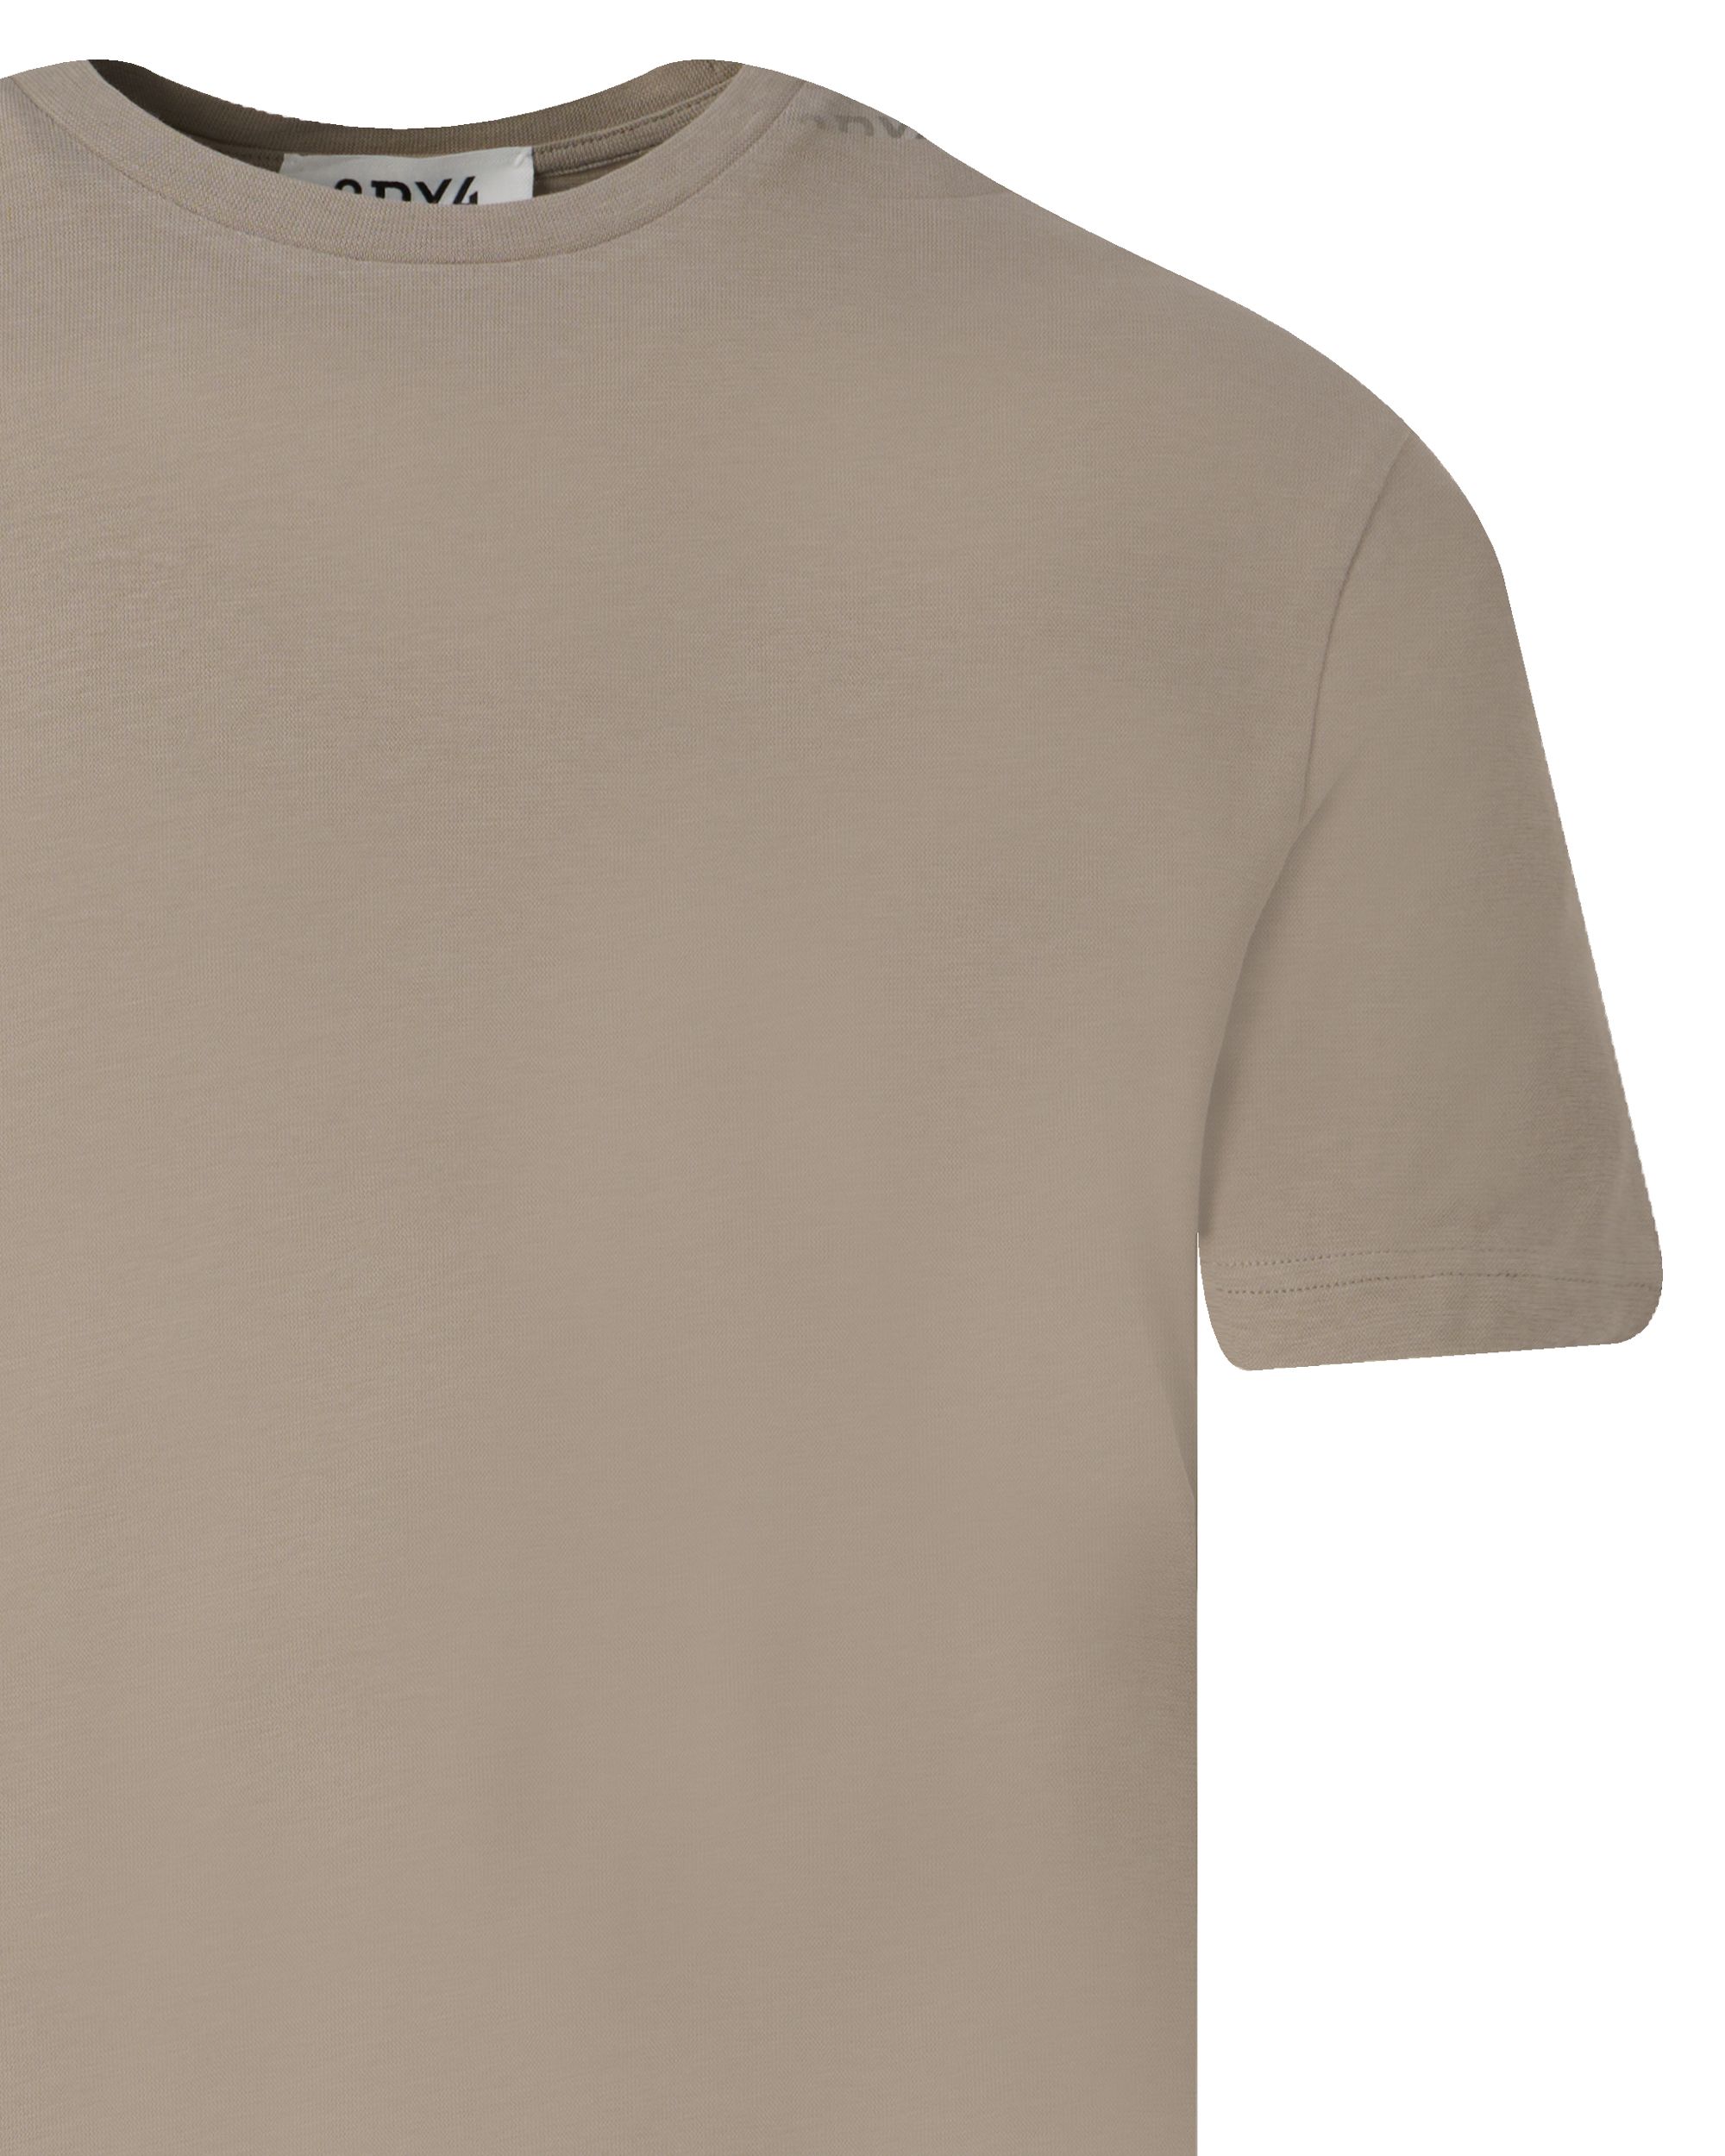 Drykorn Gilberd T-shirt KM Bruin 093451-001-L